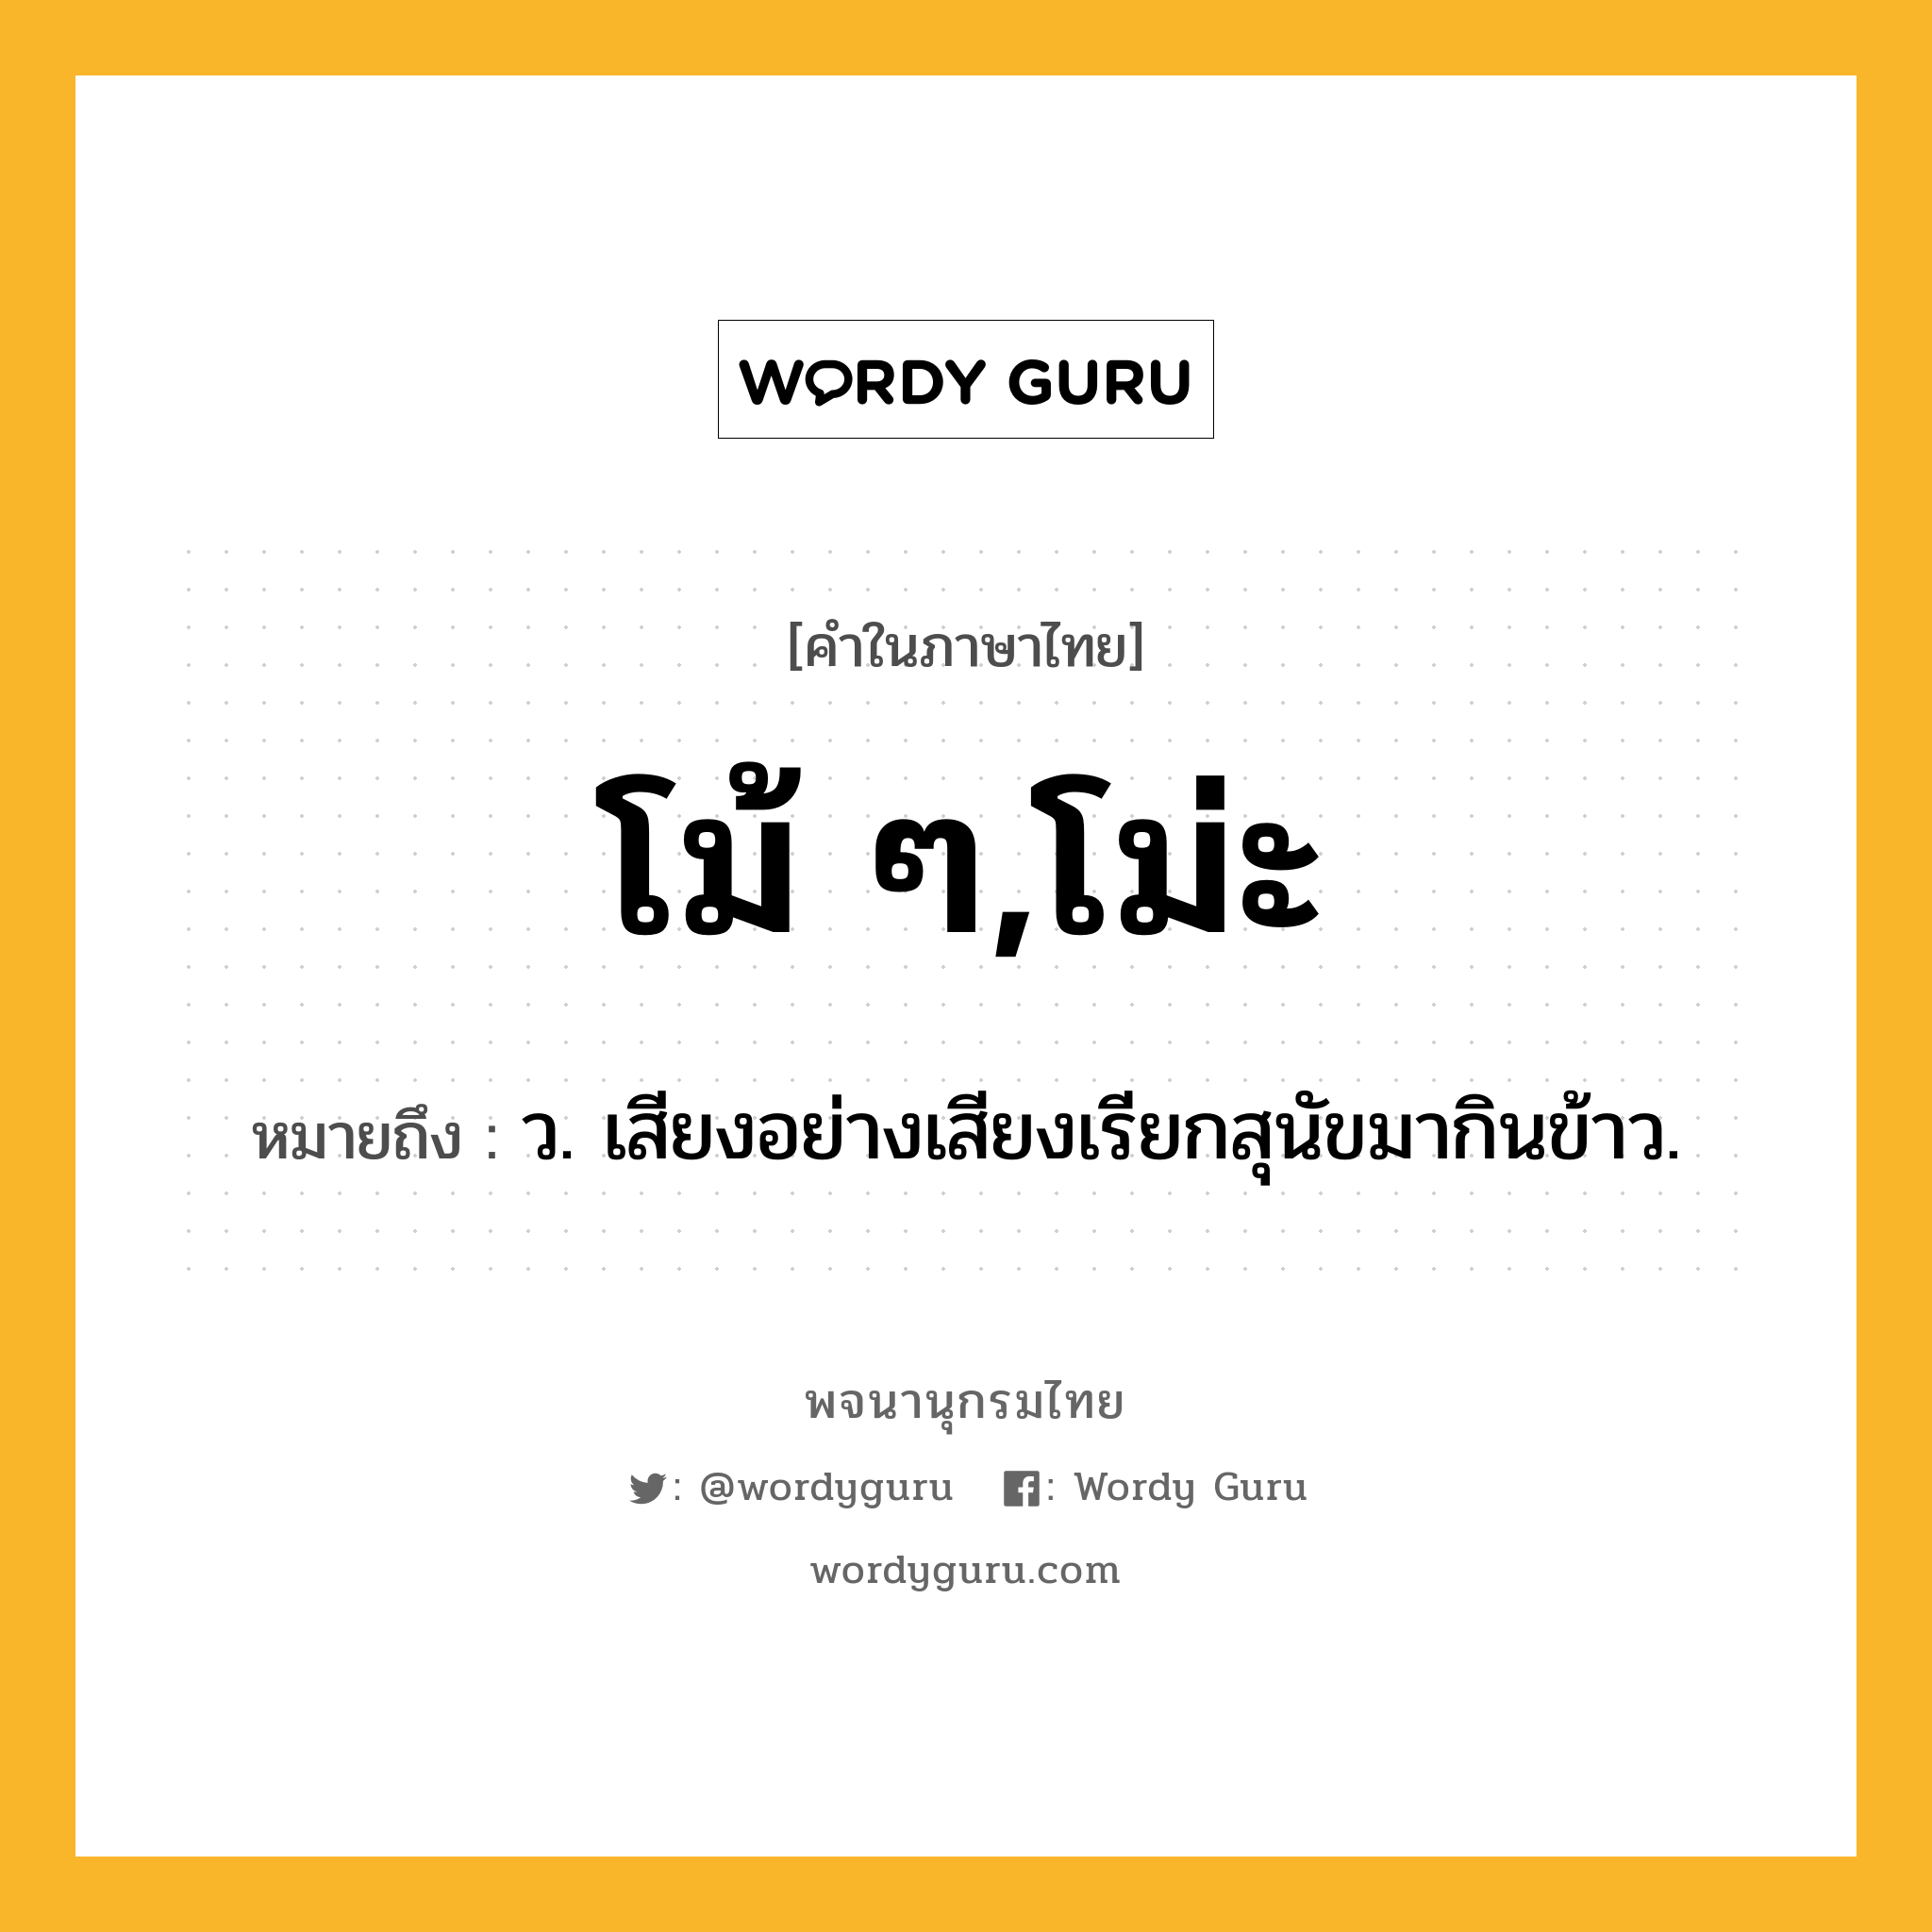 โม้ ๆ,โม่ะ ความหมาย หมายถึงอะไร?, คำในภาษาไทย โม้ ๆ,โม่ะ หมายถึง ว. เสียงอย่างเสียงเรียกสุนัขมากินข้าว.